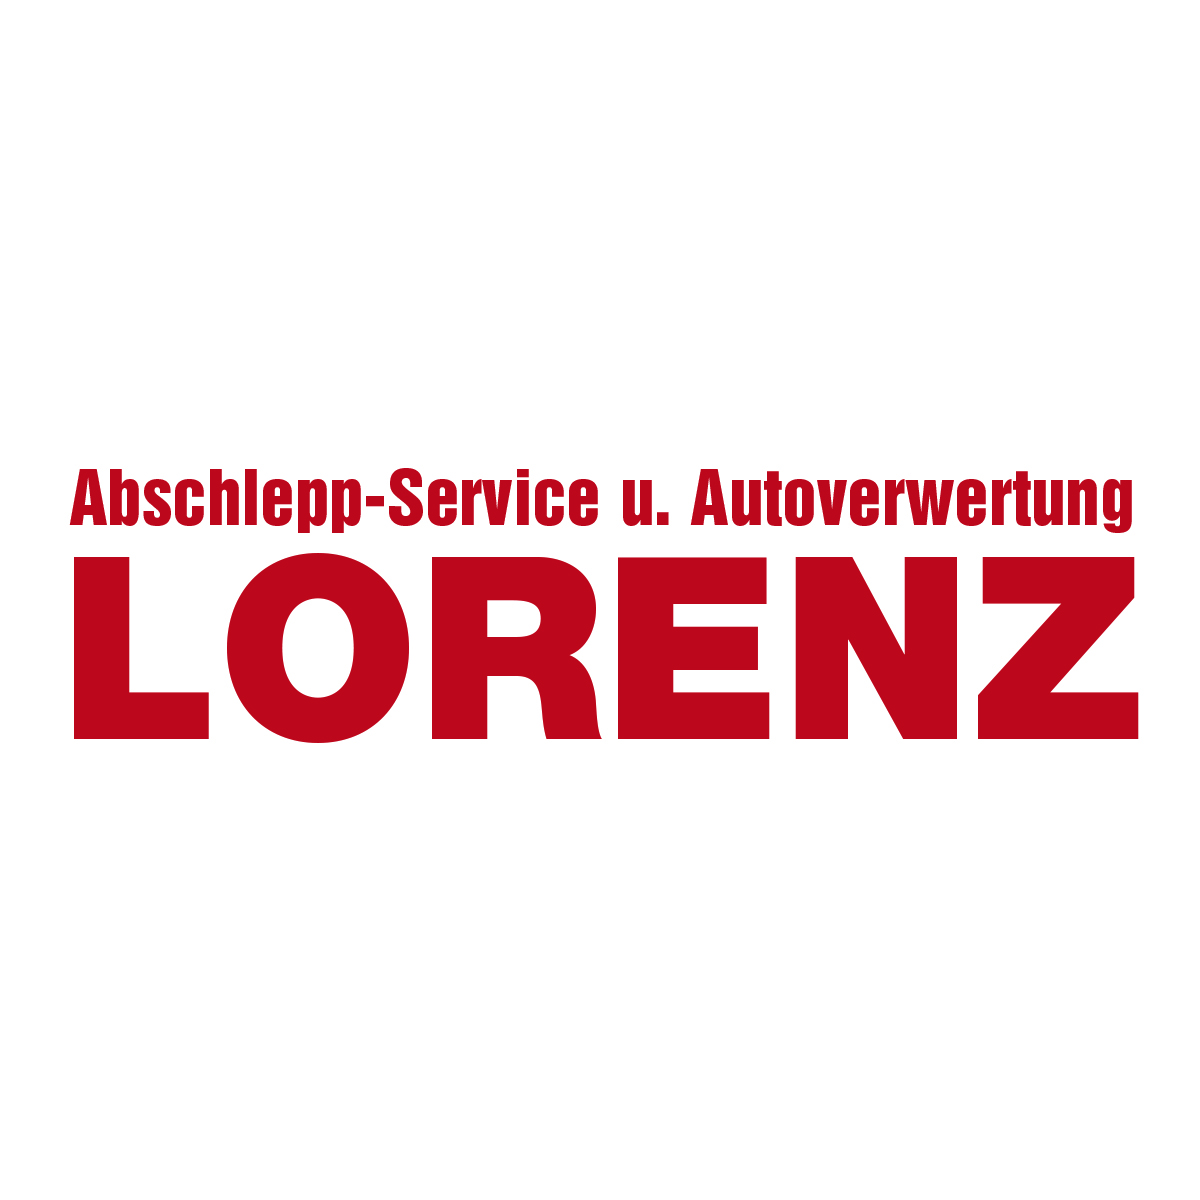 Abschlepp-Service und Autoverwertung Lorenz e. K. in Oer Erkenschwick - Logo